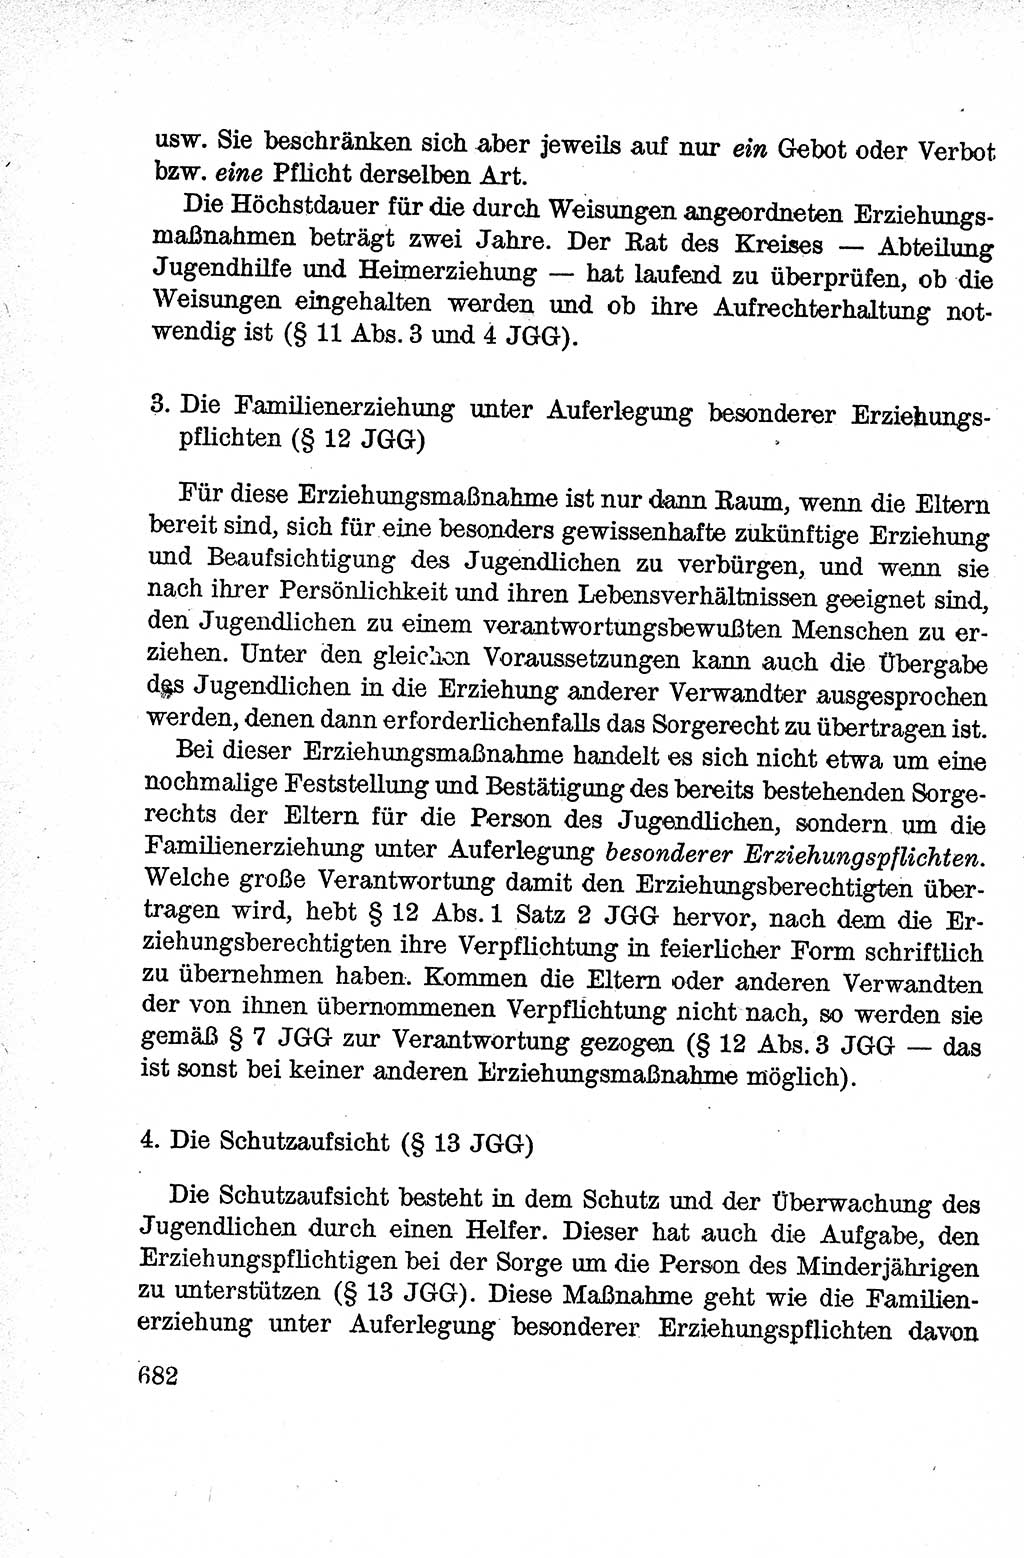 Lehrbuch des Strafrechts der Deutschen Demokratischen Republik (DDR), Allgemeiner Teil 1959, Seite 682 (Lb. Strafr. DDR AT 1959, S. 682)